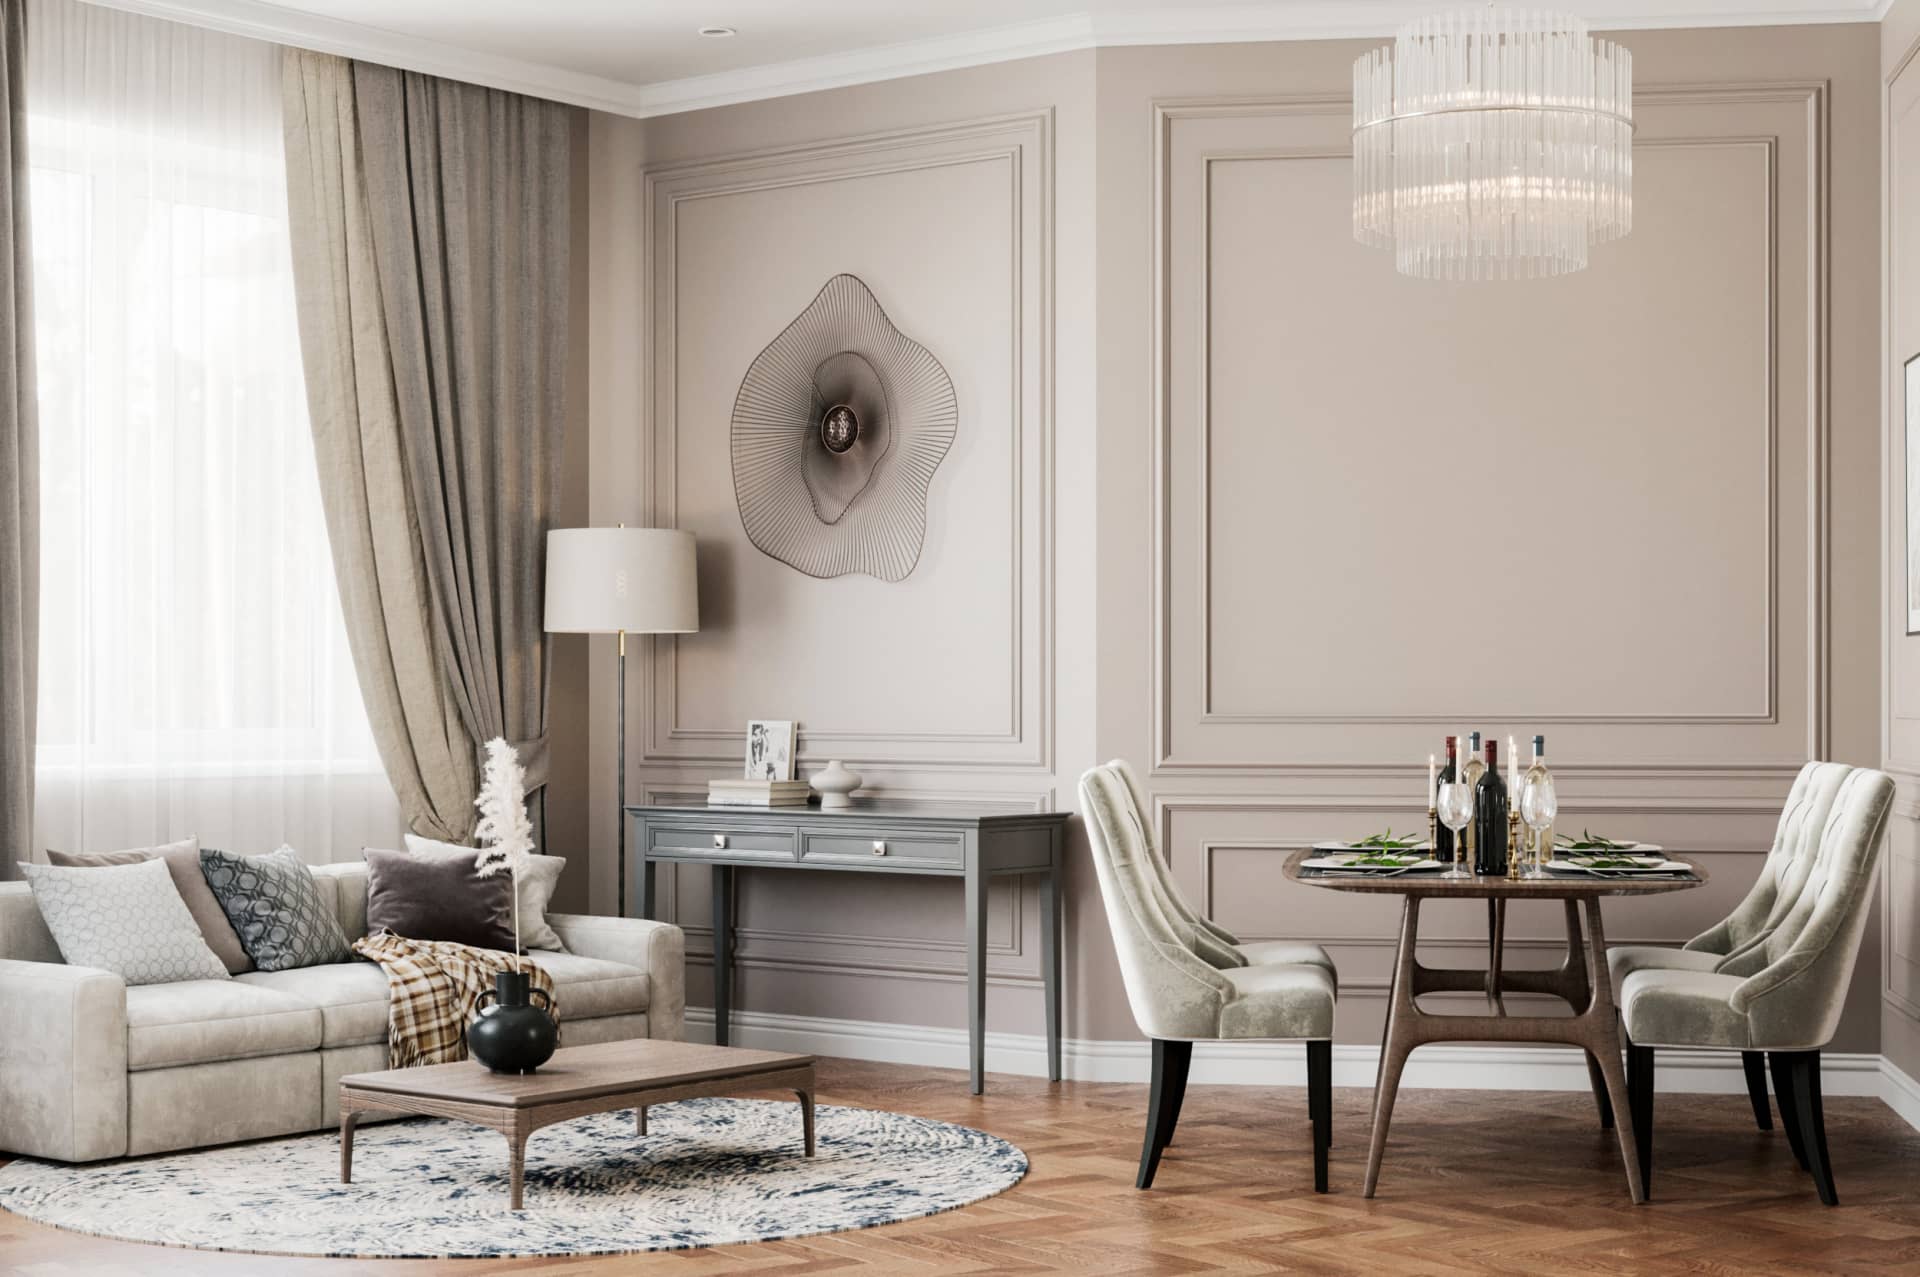 Оформление интерьера гостиной трехкомнатной квартиры в коричневый цвет в стиле современной классики. Фото № 62285.